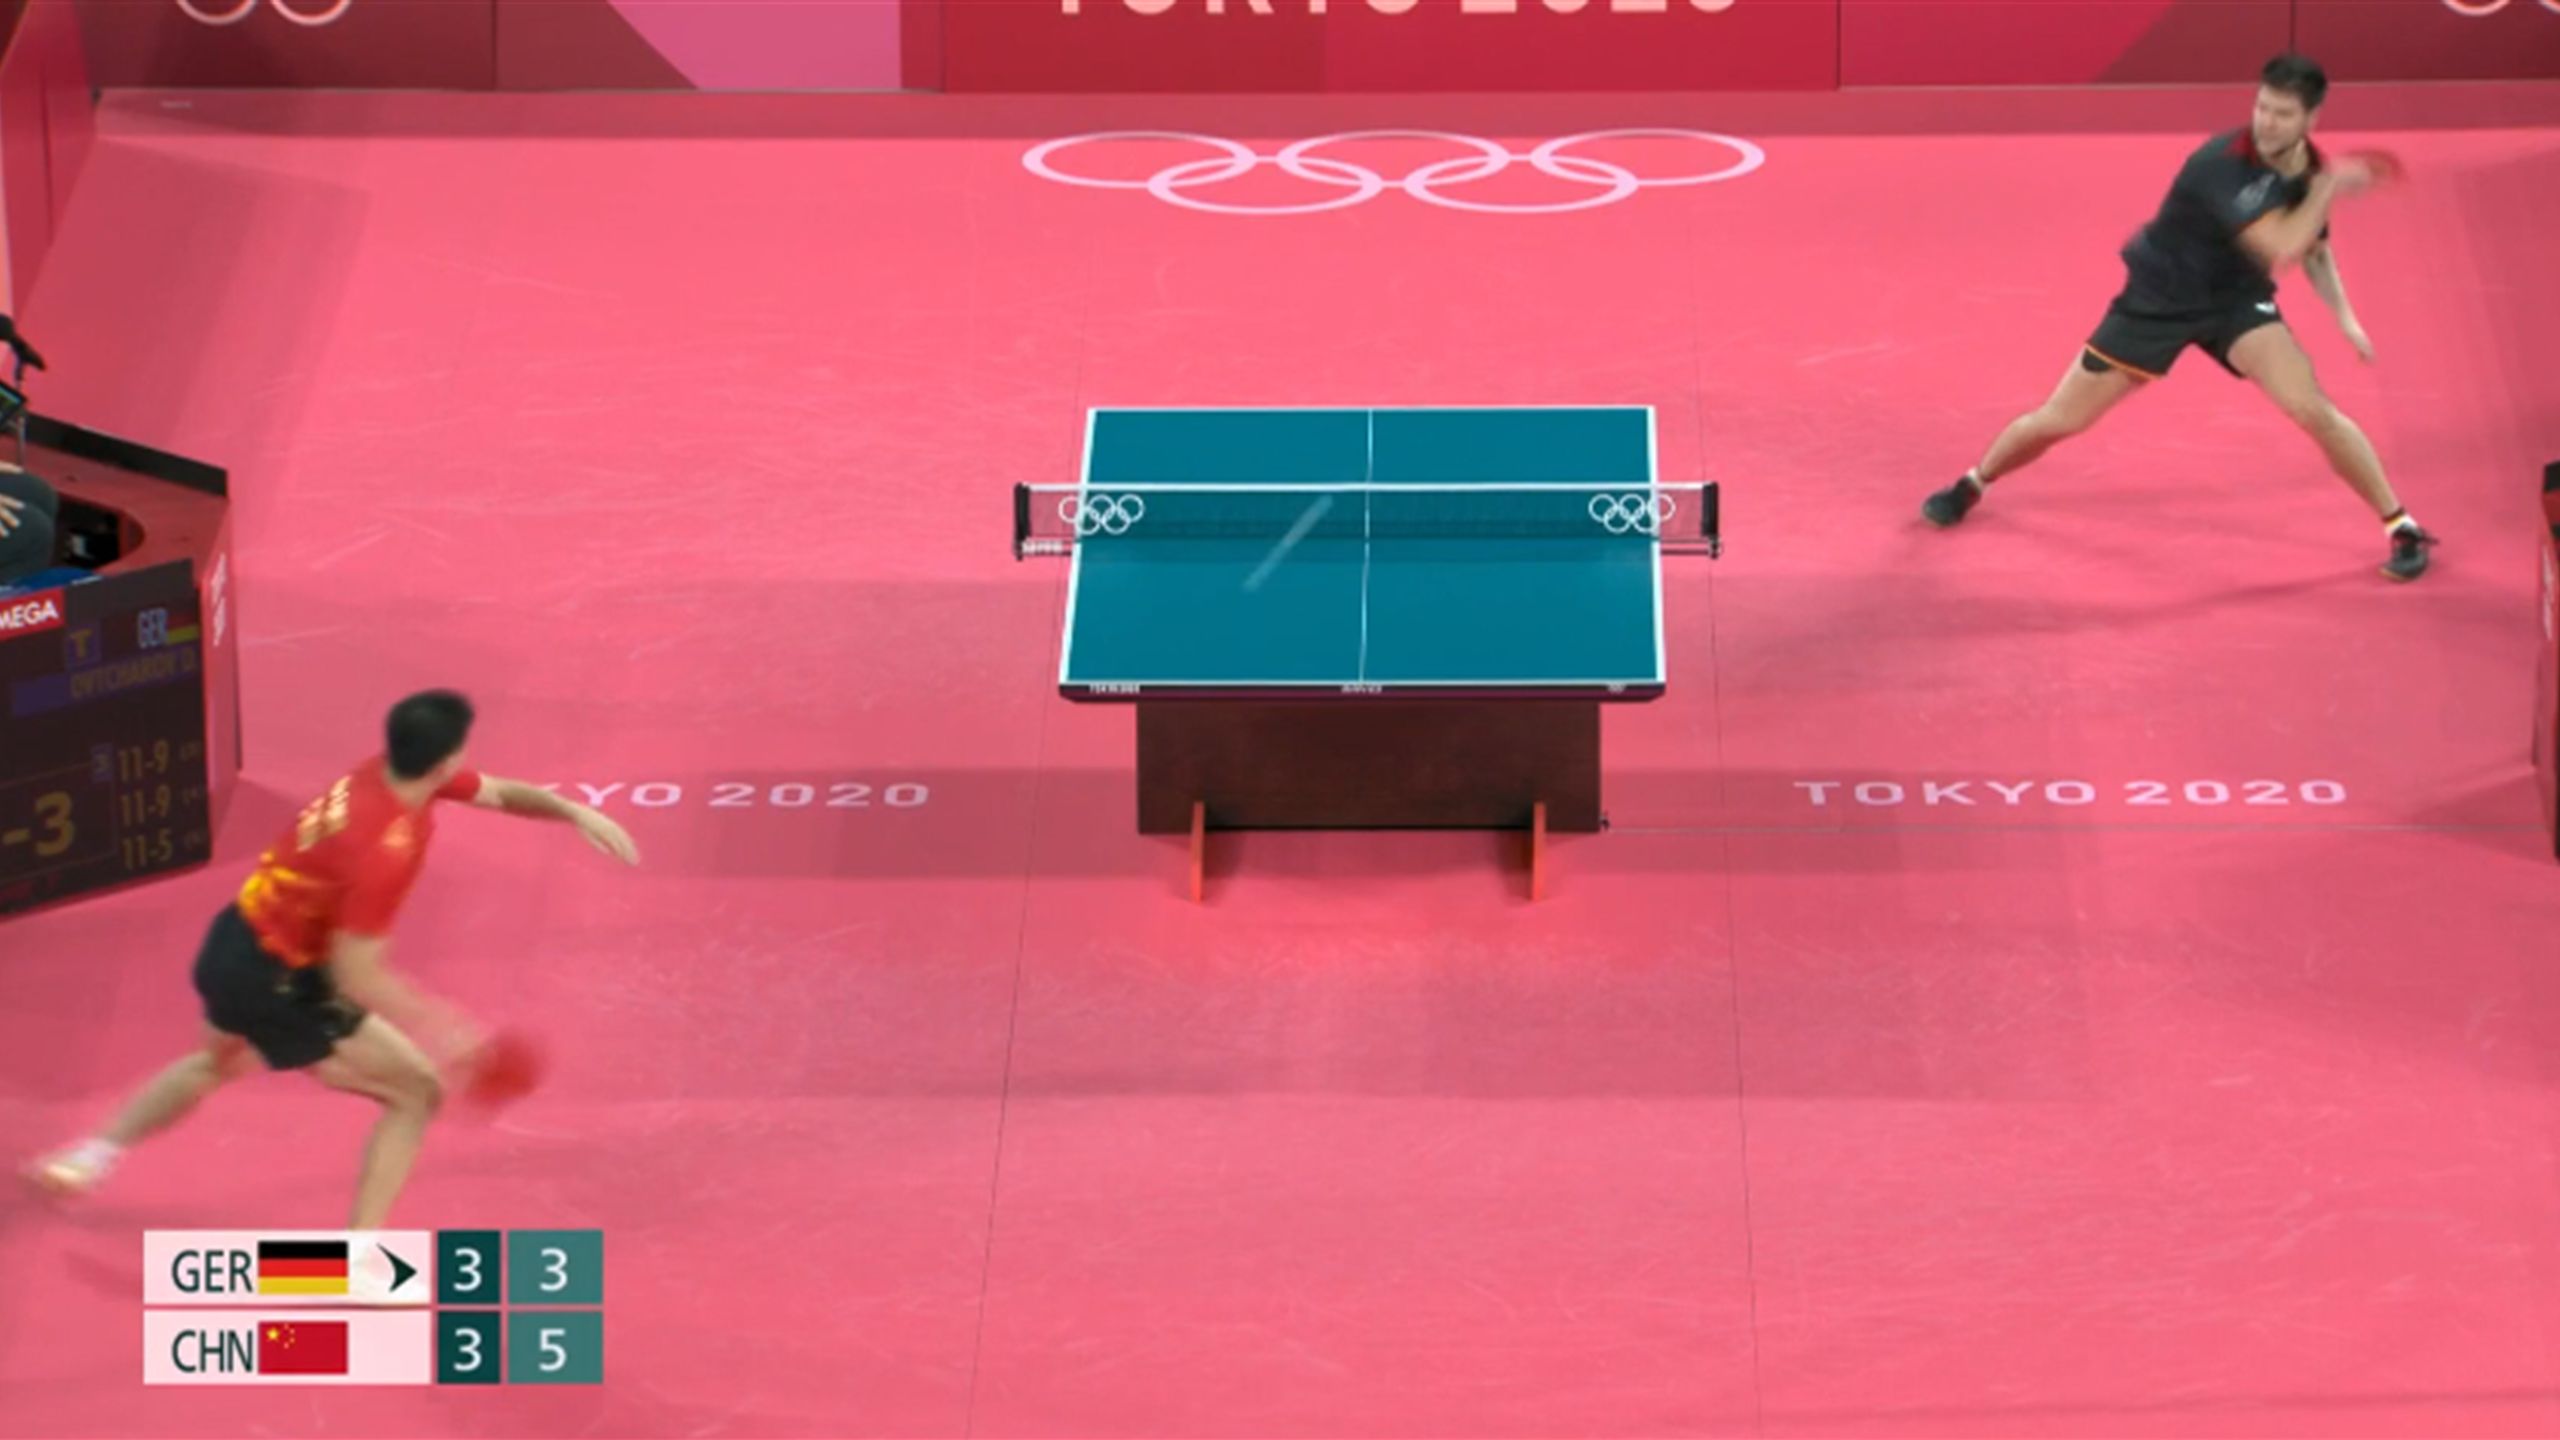 Olympia - Tischtennis Dimitrij Ovtcharov und Ma Long zeigen im Halbfinale Wahnsinnsballwechsel - Tischtennis Video